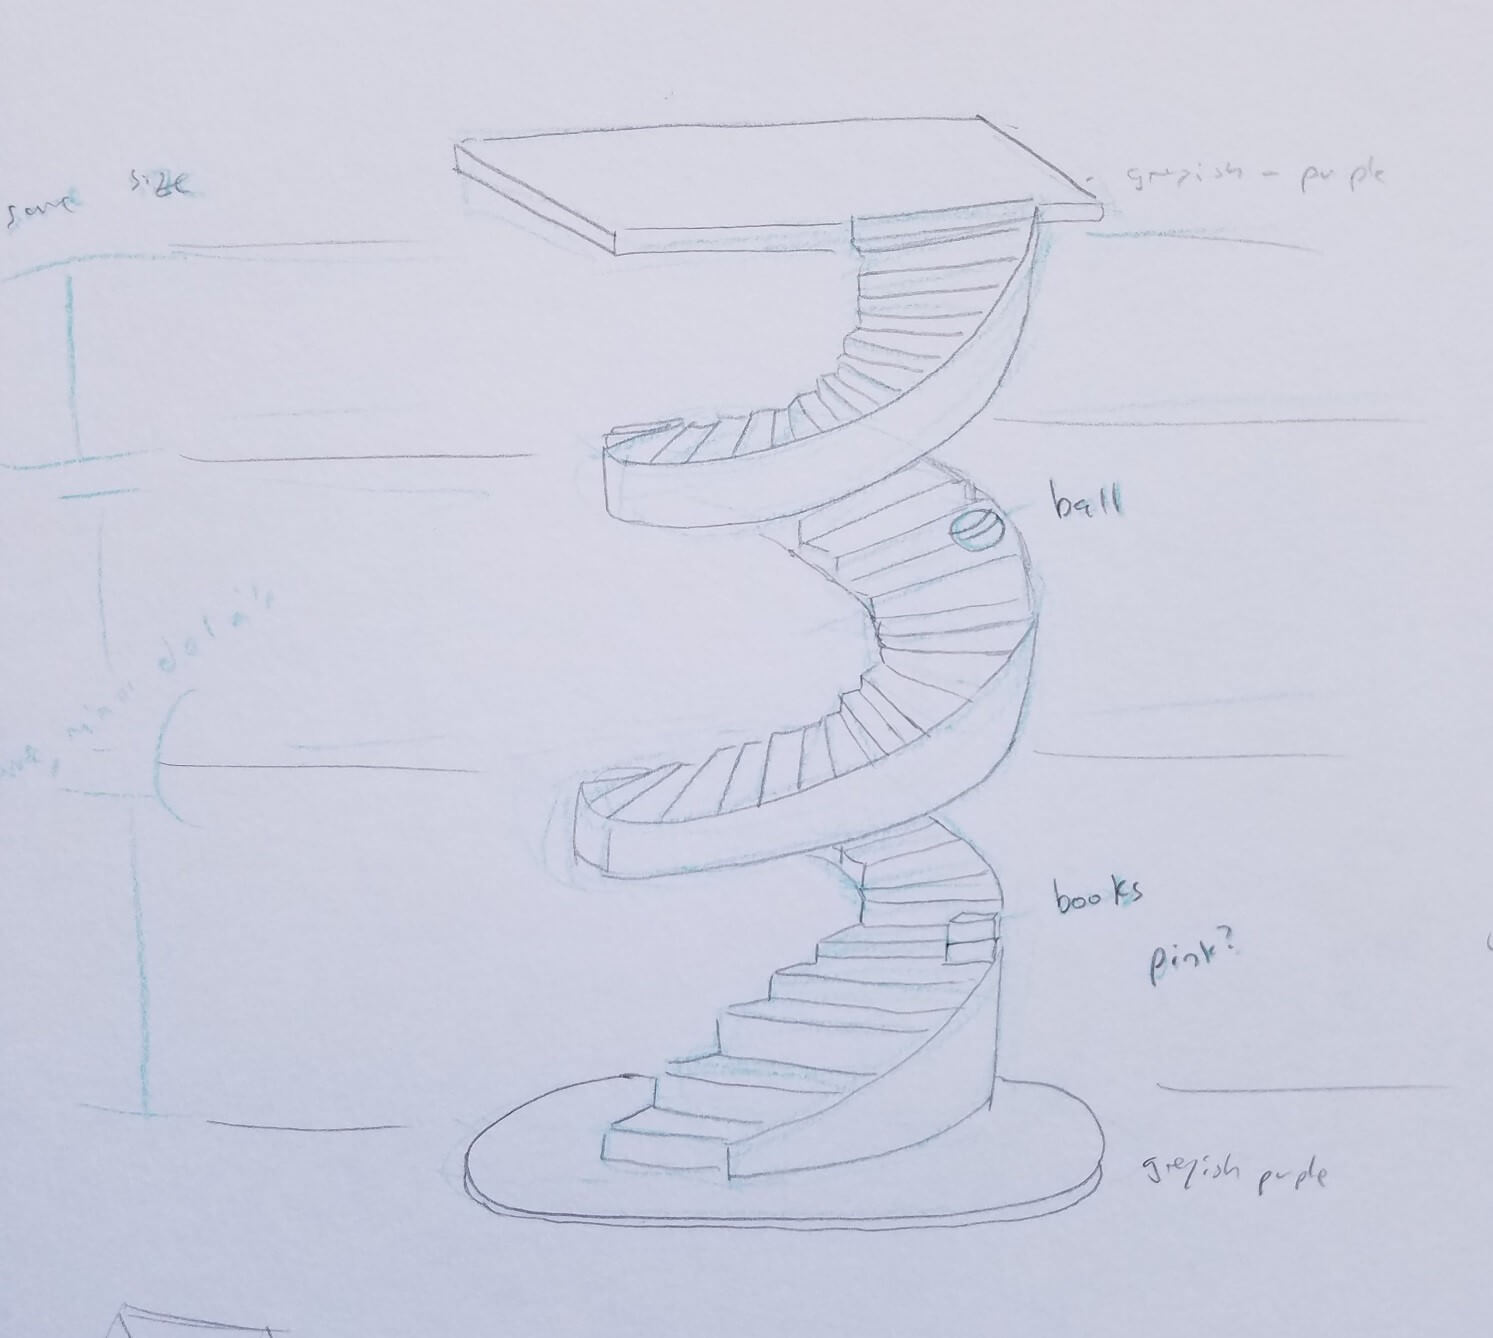 3D stair model sketch